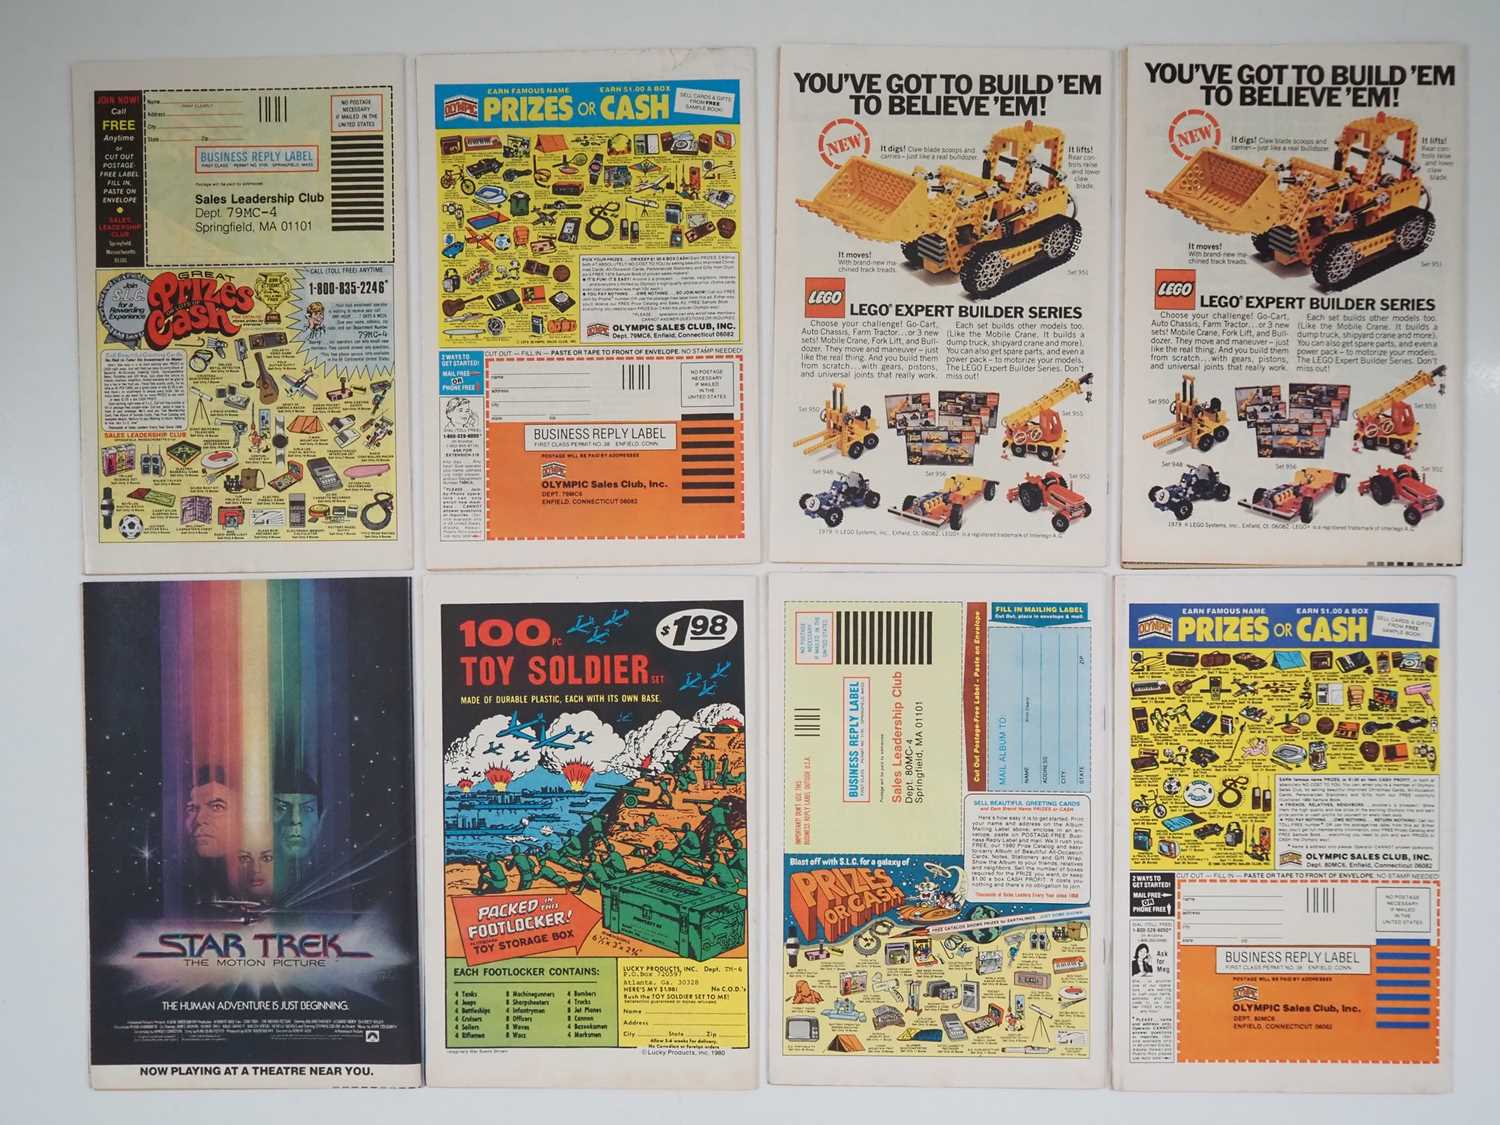 MARVEL SPOTLIGHT VOL. 2 #1, 2, 3, 4, 5, 6, 7, 8 (8 in Lot) - (1979/1980 - MARVEL - US & UK Price - Image 2 of 2